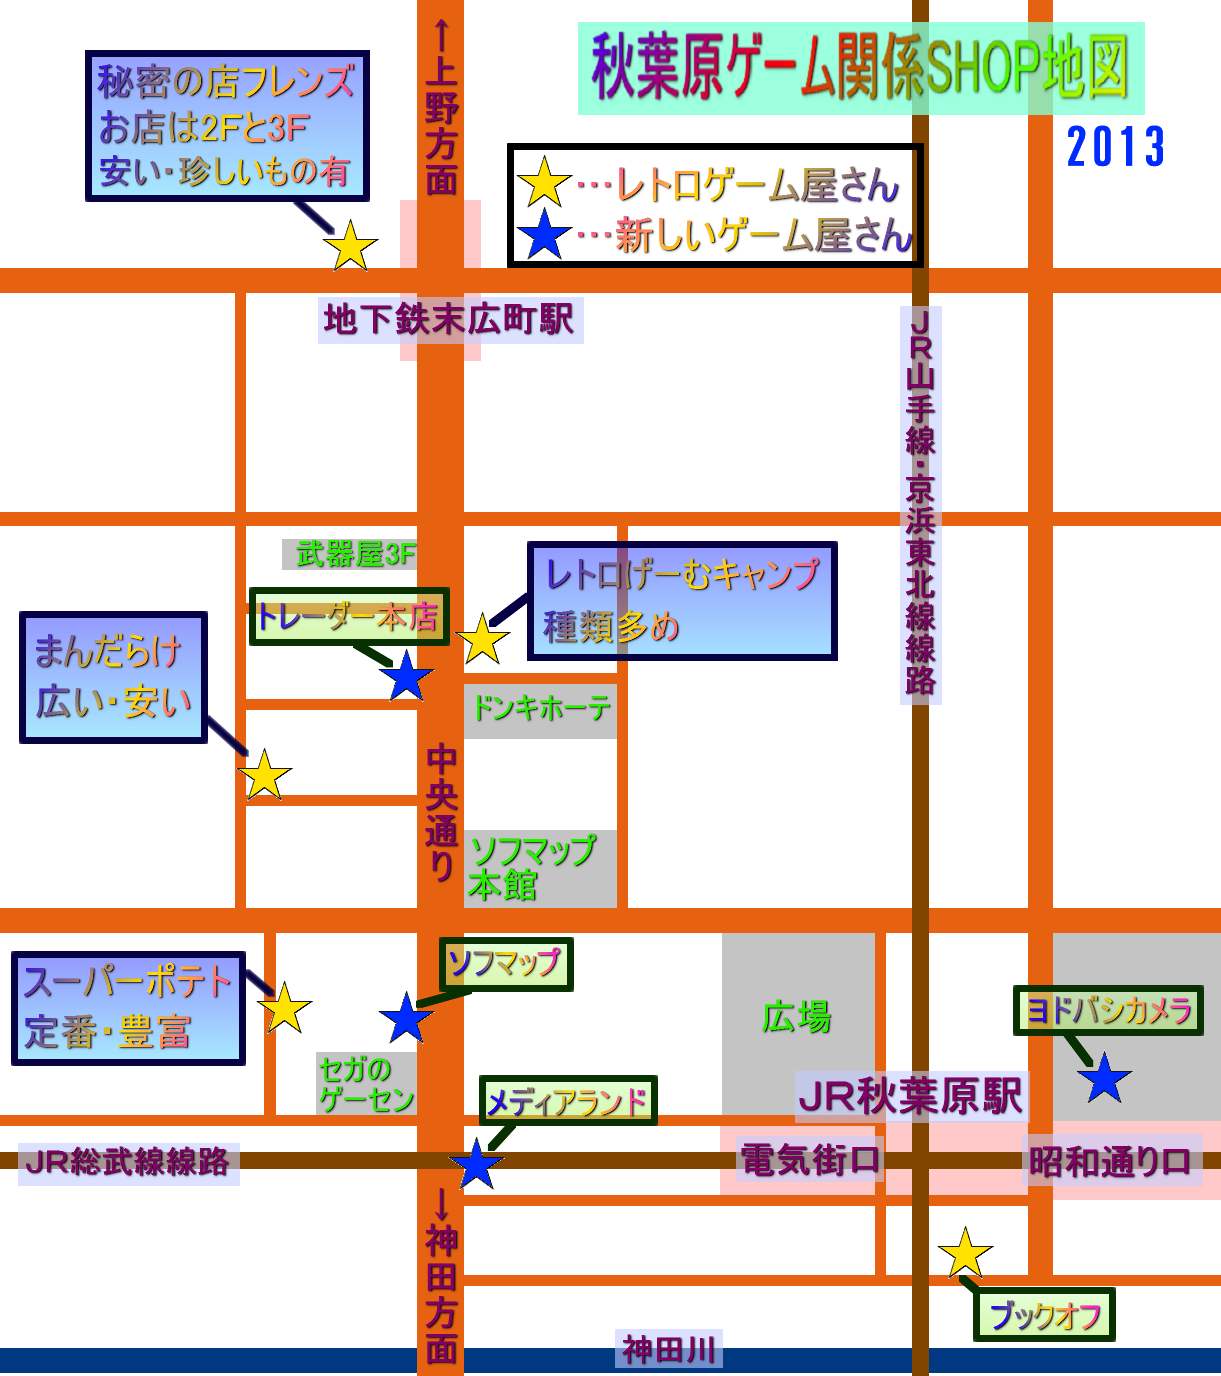 秋葉原ゲームショップ地図2013